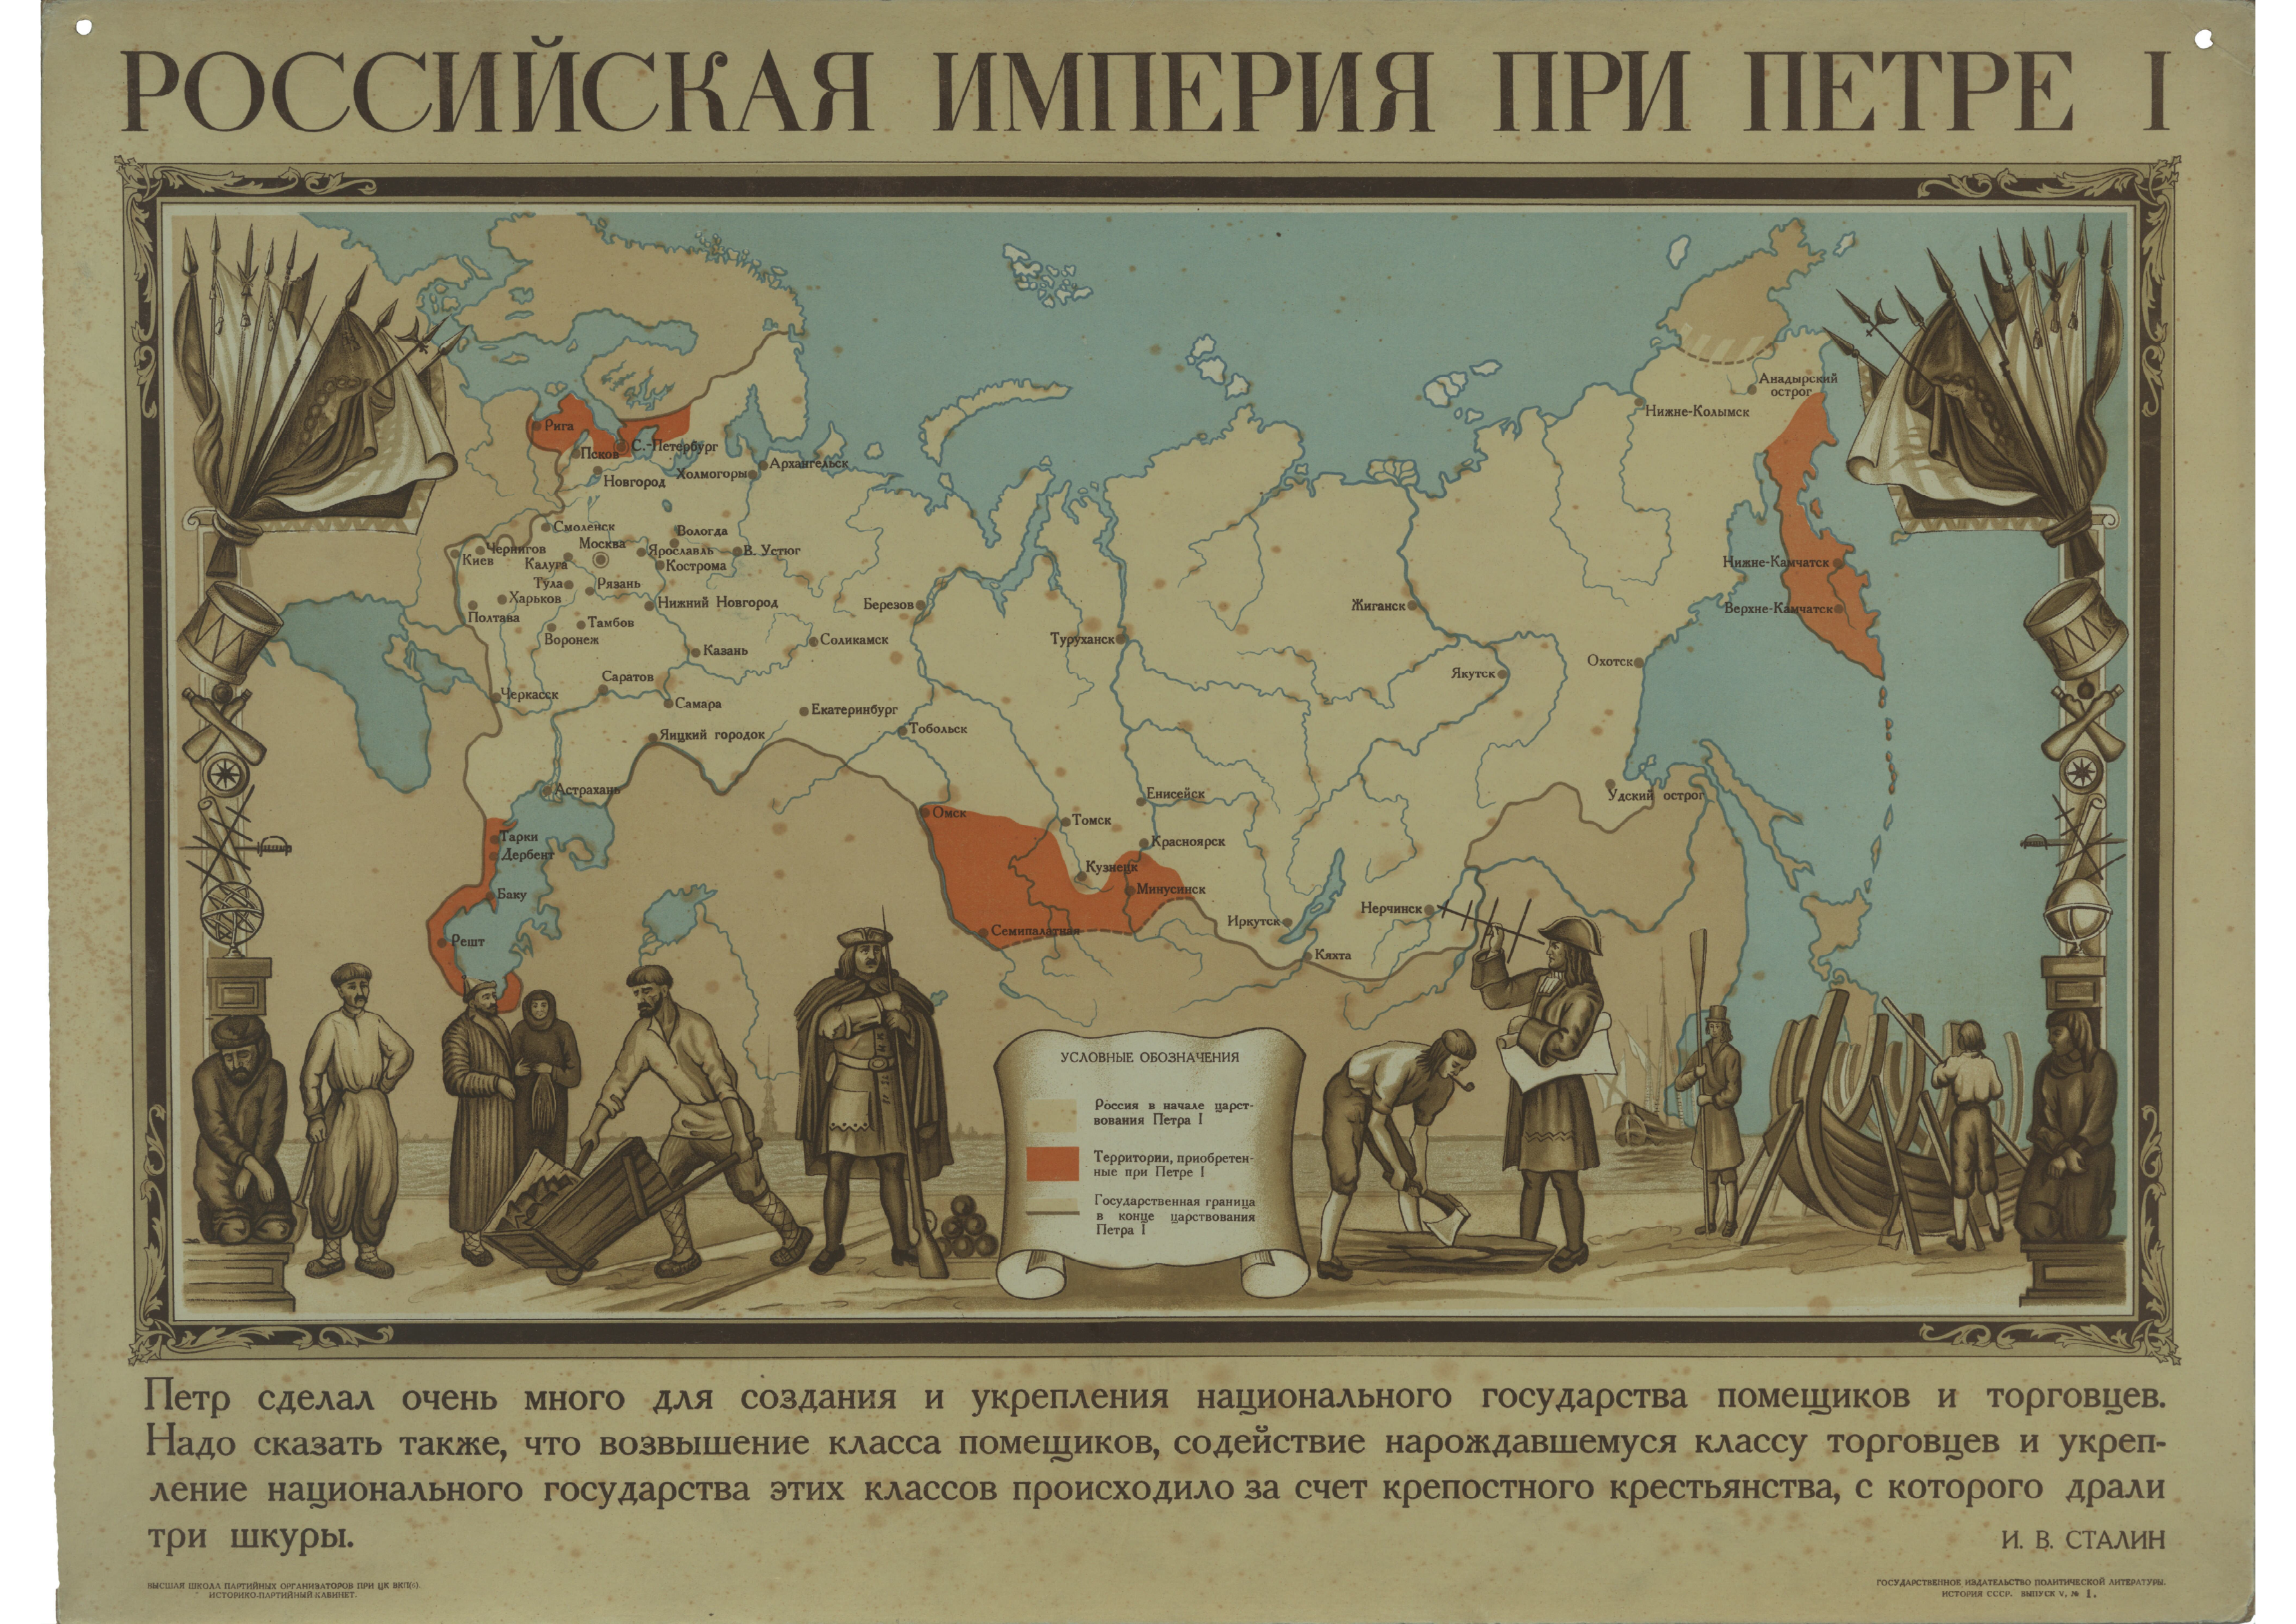 История российская империя в начале 20 века